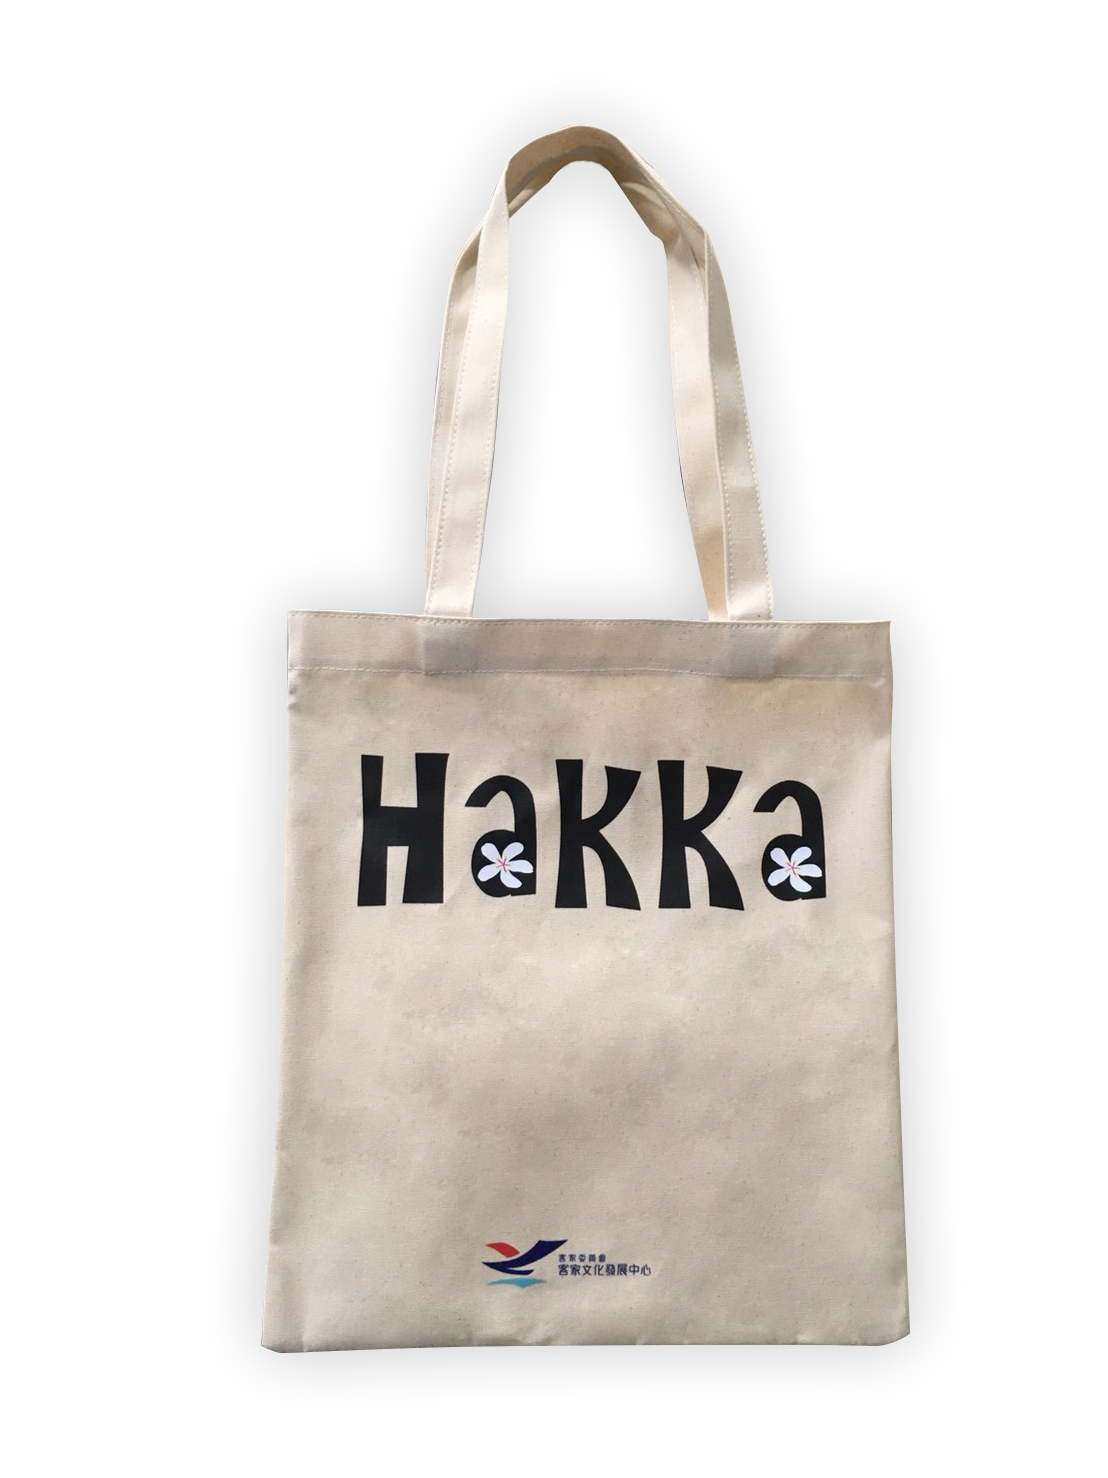 限量HAKKA環保手提袋